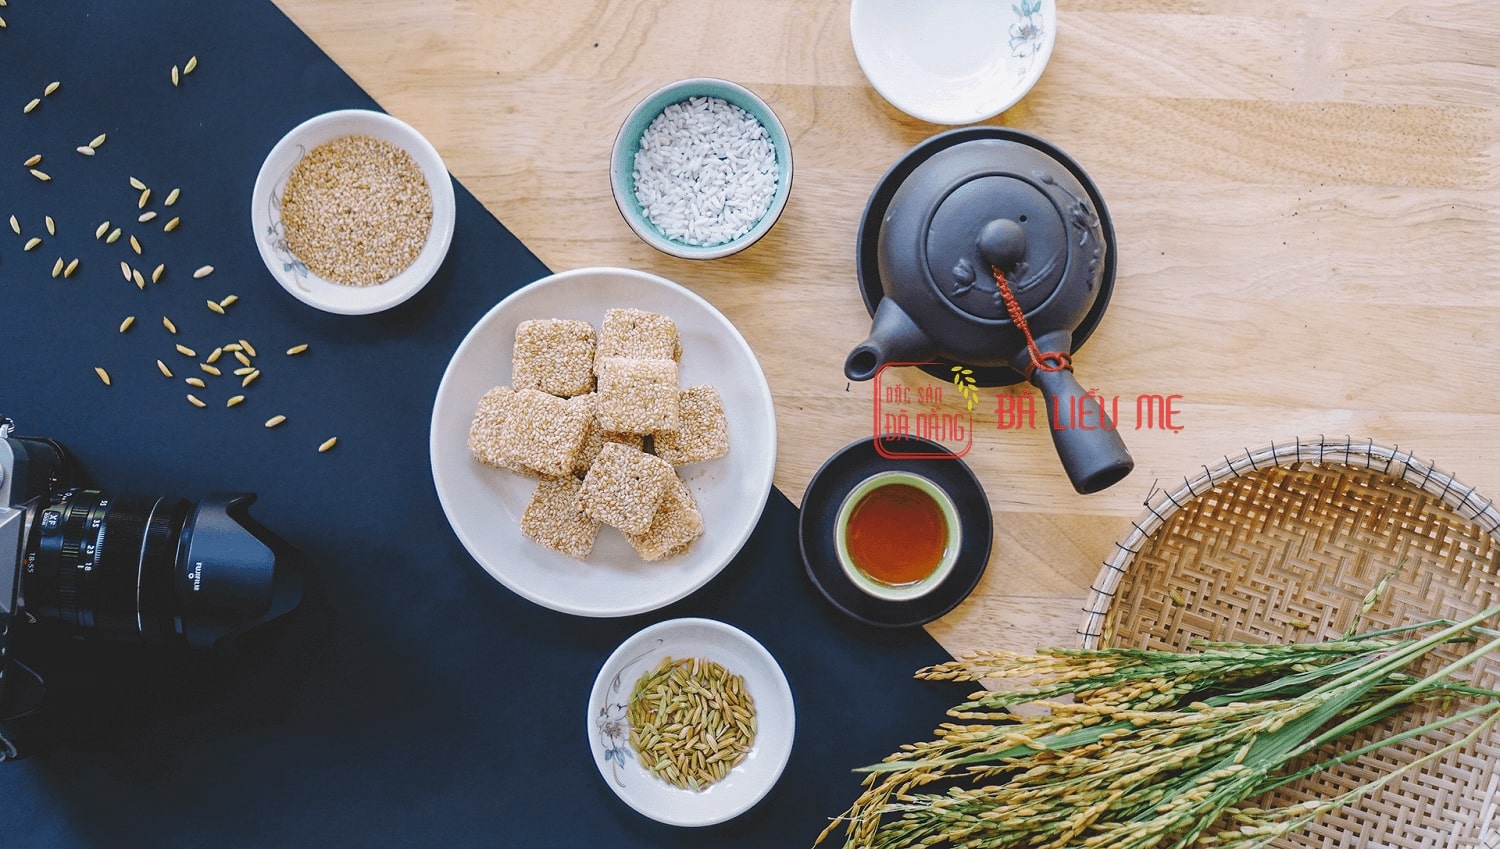 Bánh khô mè - Đặc sản Đà Nẵng - miền Trung